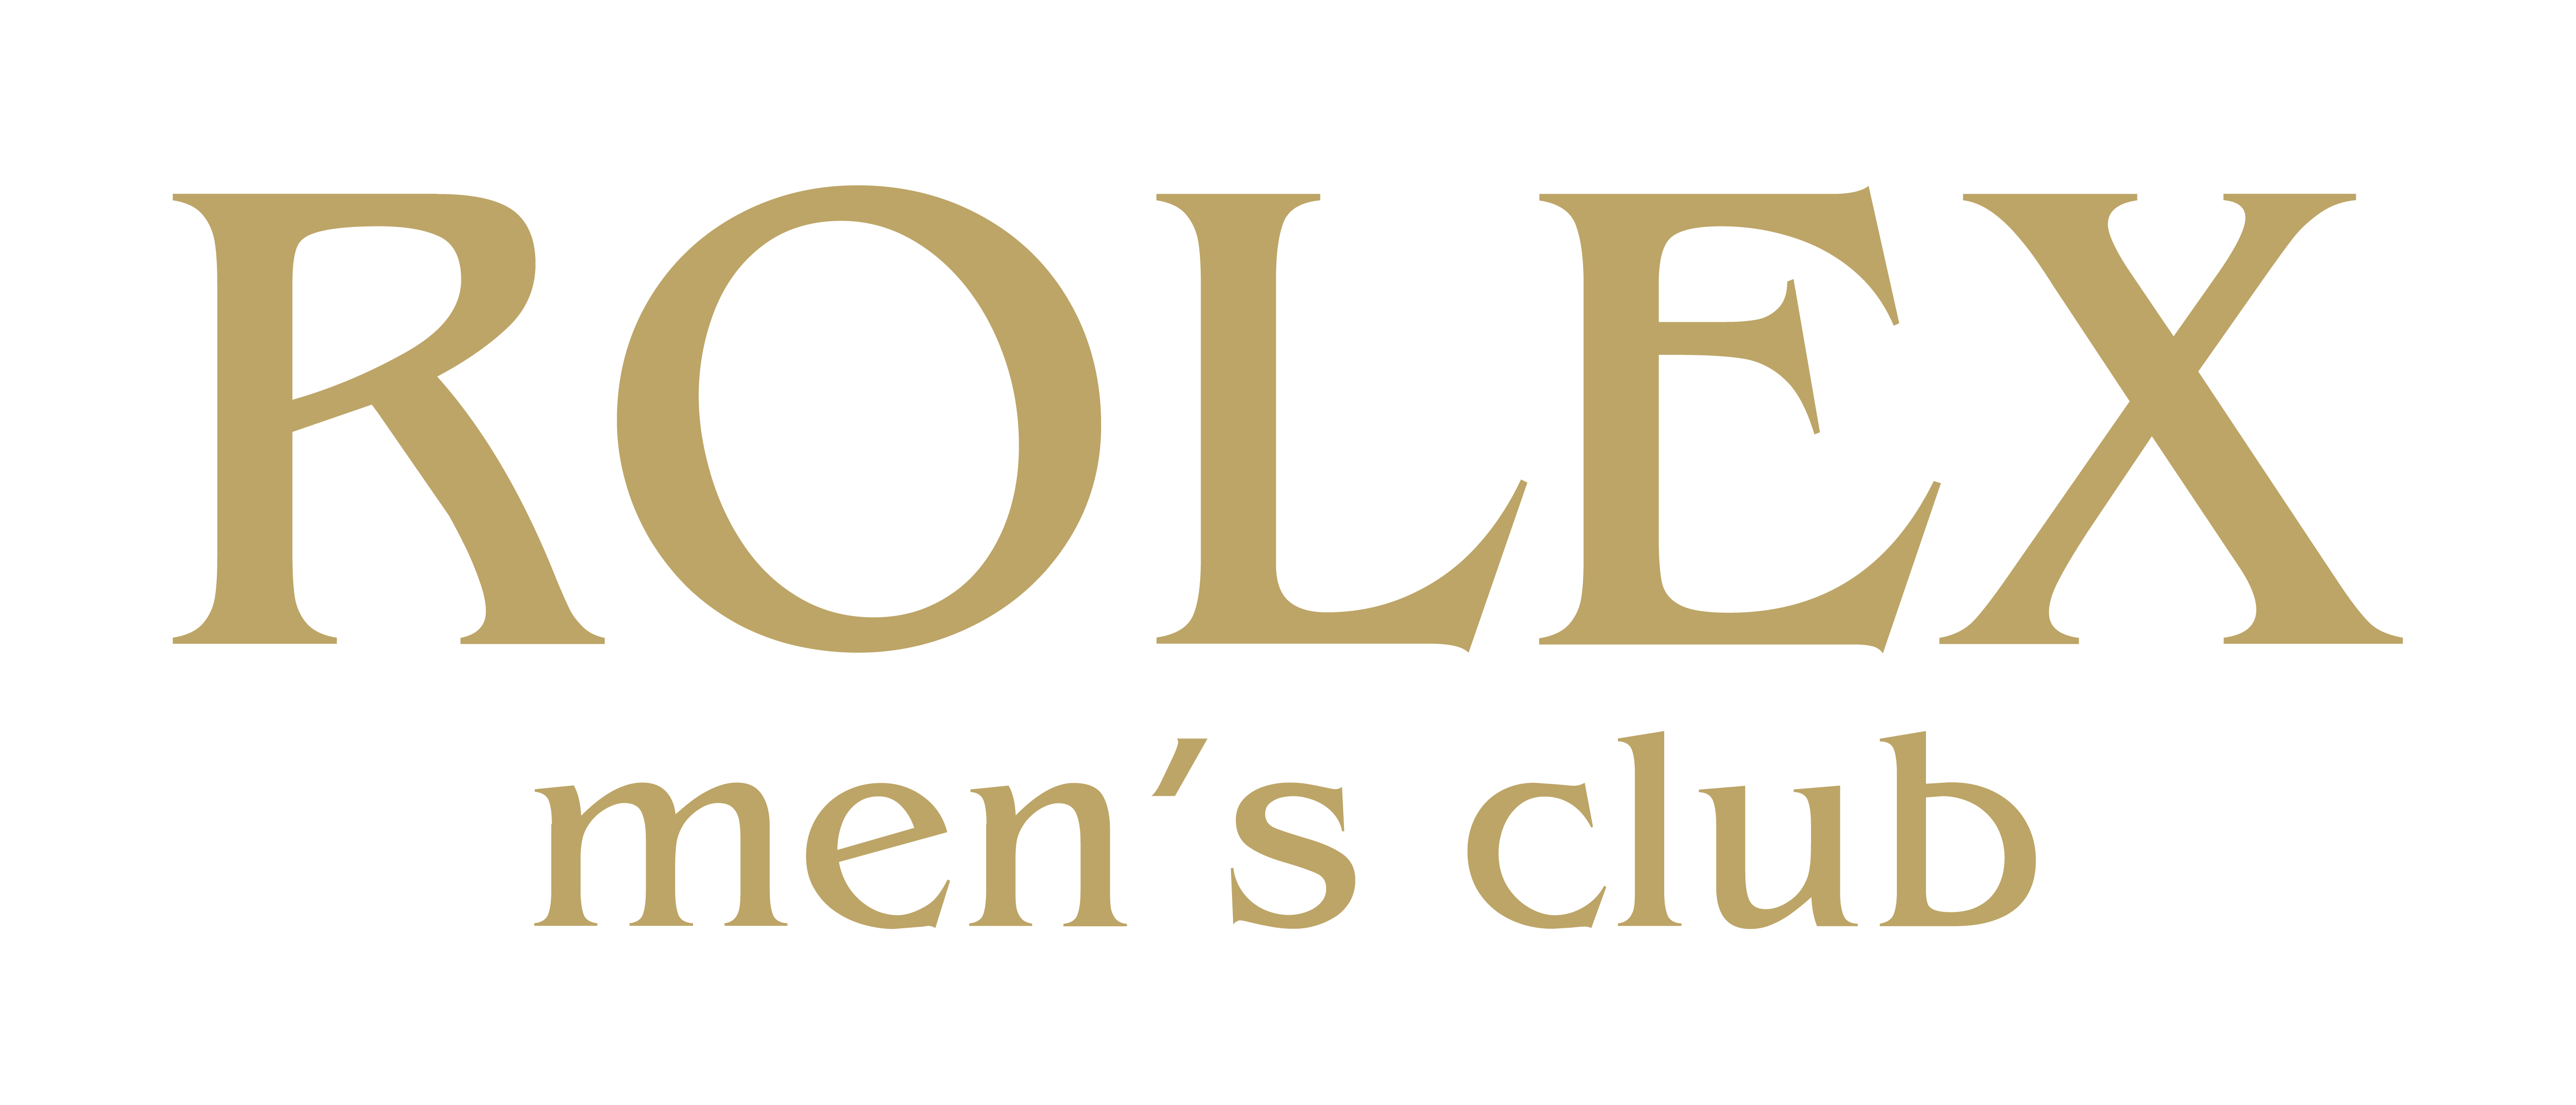 ROLEX MEN'S CLUB